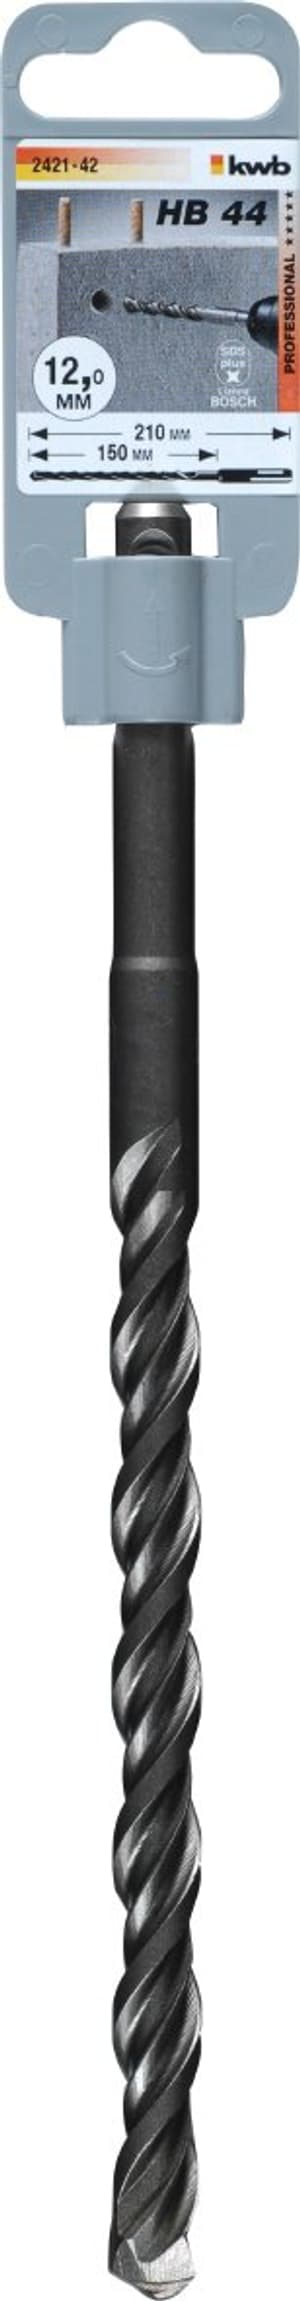 HB 44 SDS plus pour marteaux perforateur, 210/150 mm, ø 12 mm